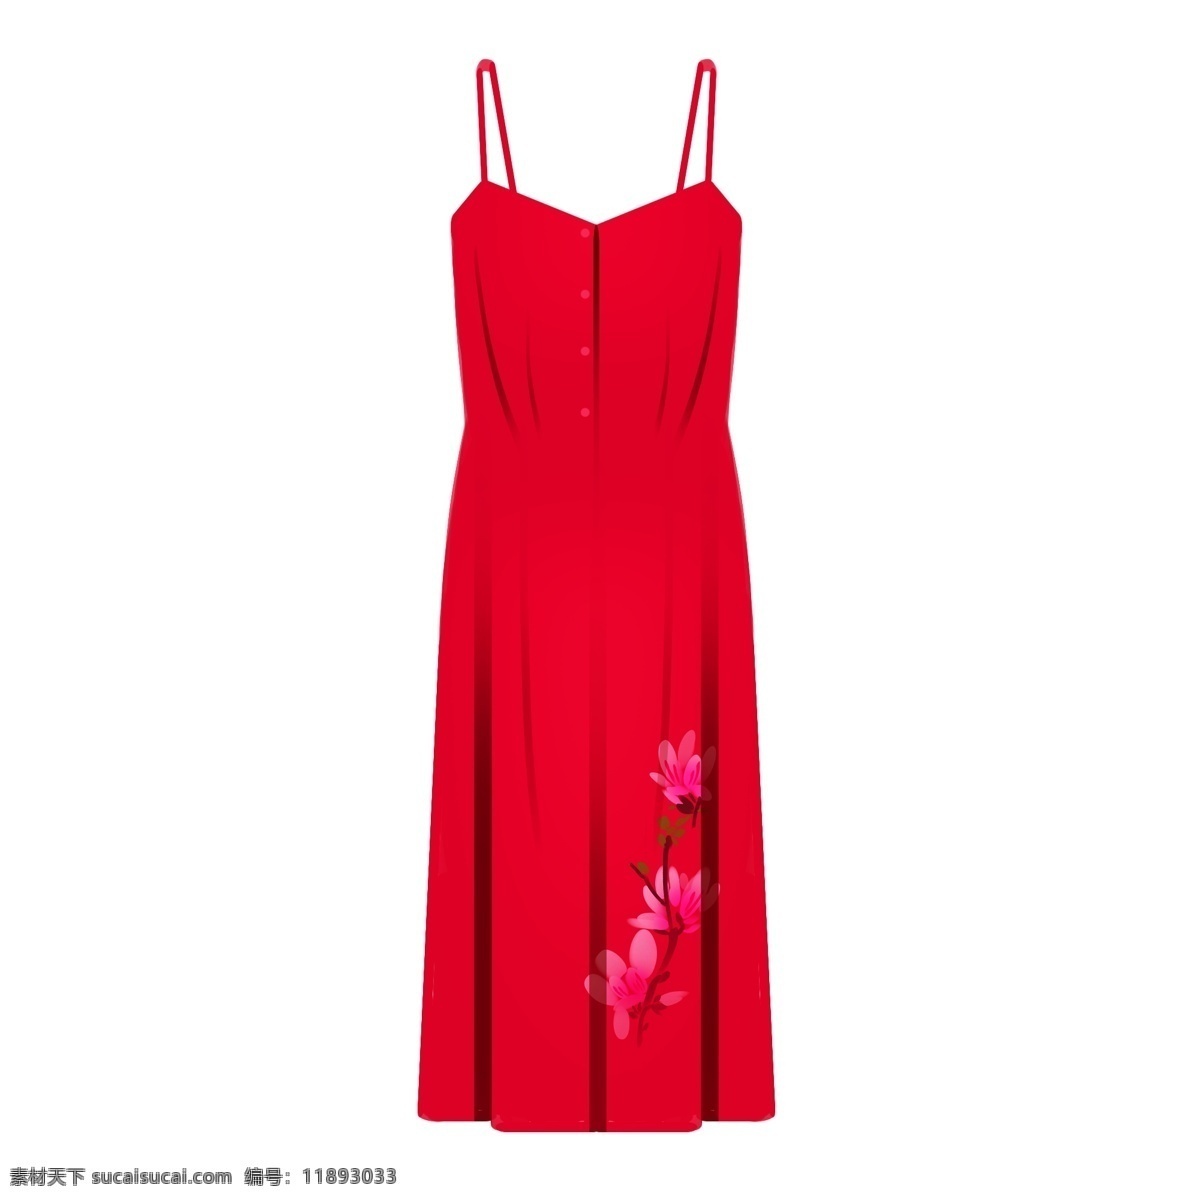 红色 吊带 连衣裙 夏季衣物 吊带裙子